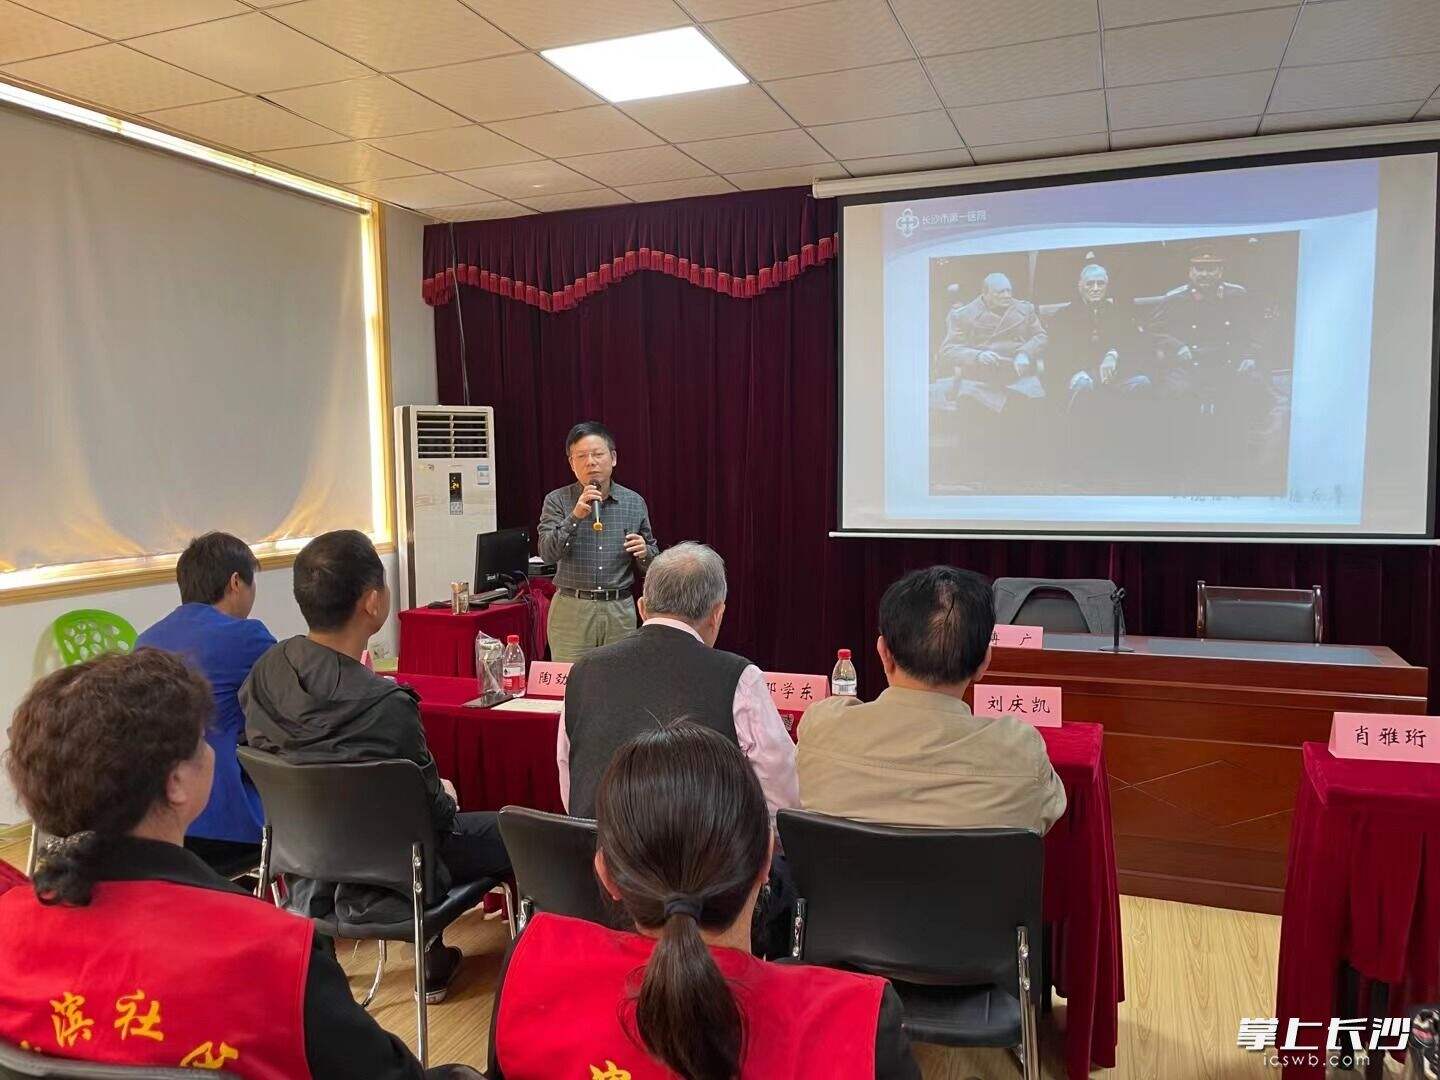 长沙市第一医院心血管内科首席专家傳广教授在开福区芙蓉北路街道江滨社区为群众传授“高血压防治”的科普知识。